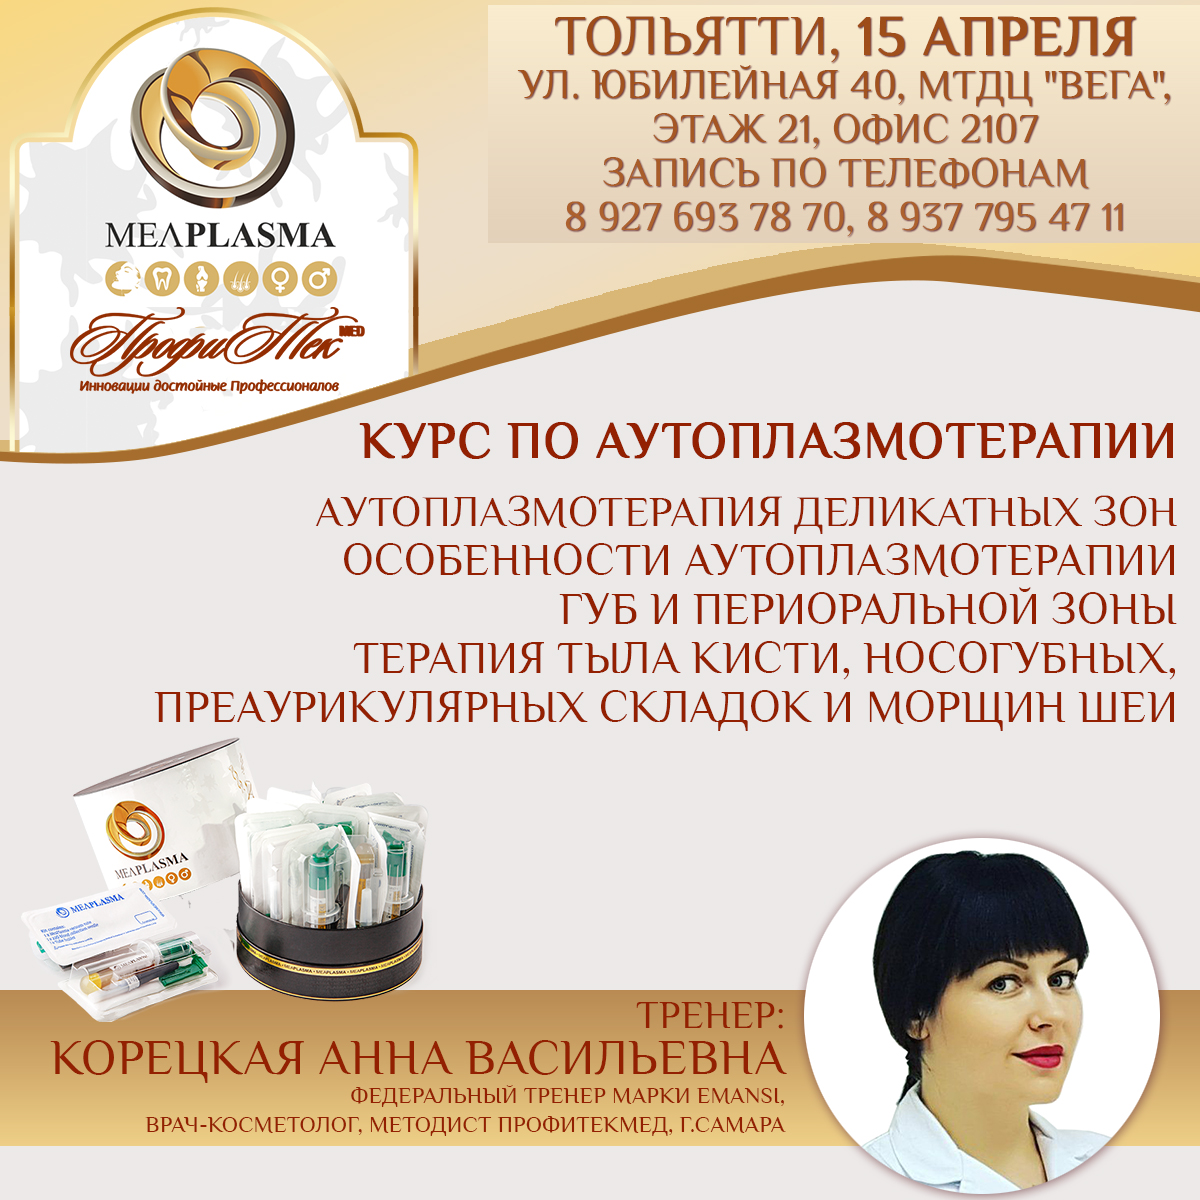 15 апреля, Тольятти, Курс по аутоплазмотерапии